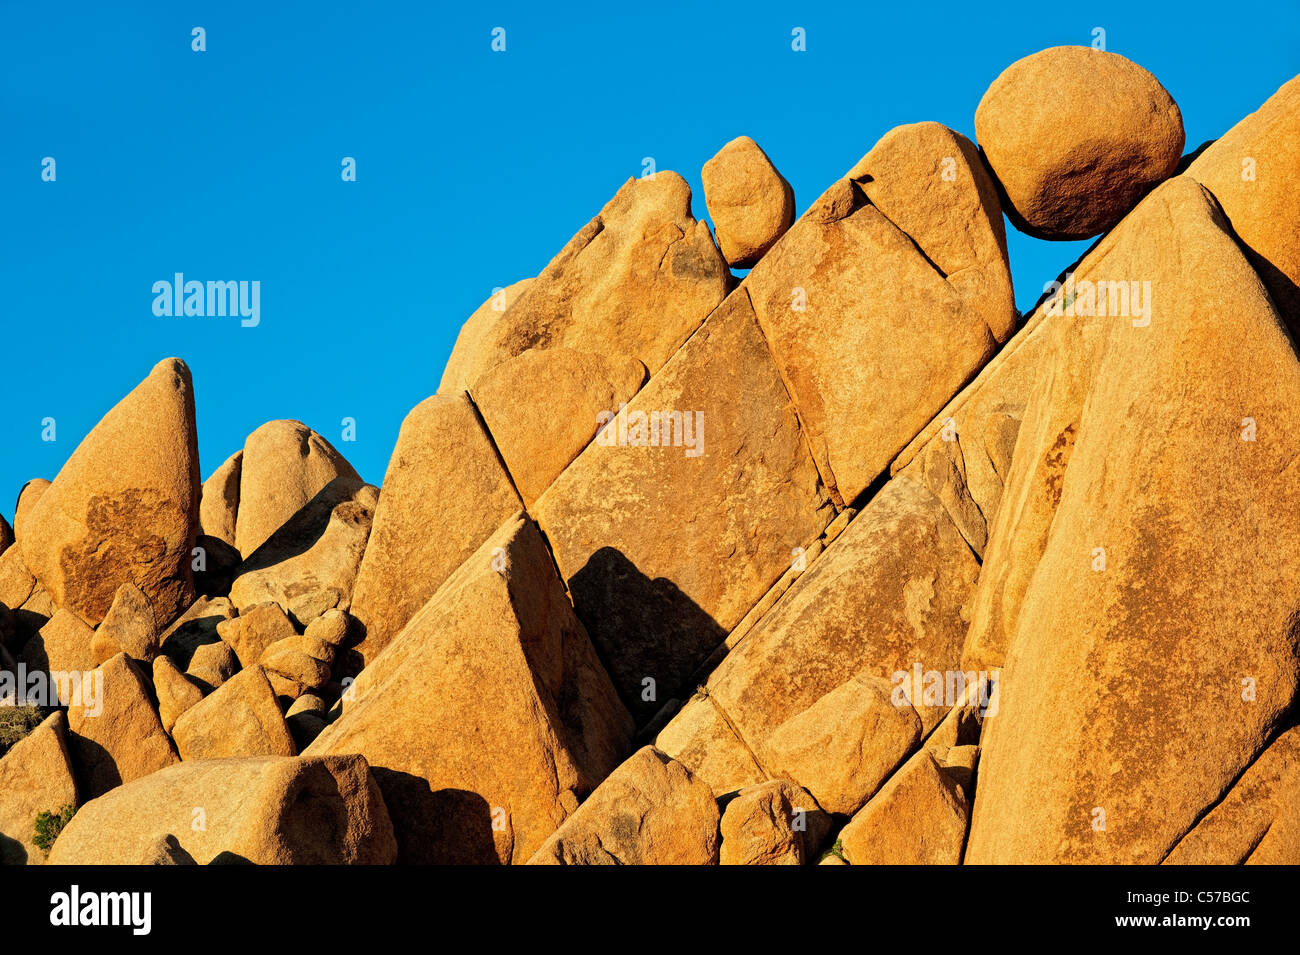 Soir lumière baigne les rochers de granit de forme géométrique de Jumbo Rocks in California's Joshua Tree National Park. Banque D'Images